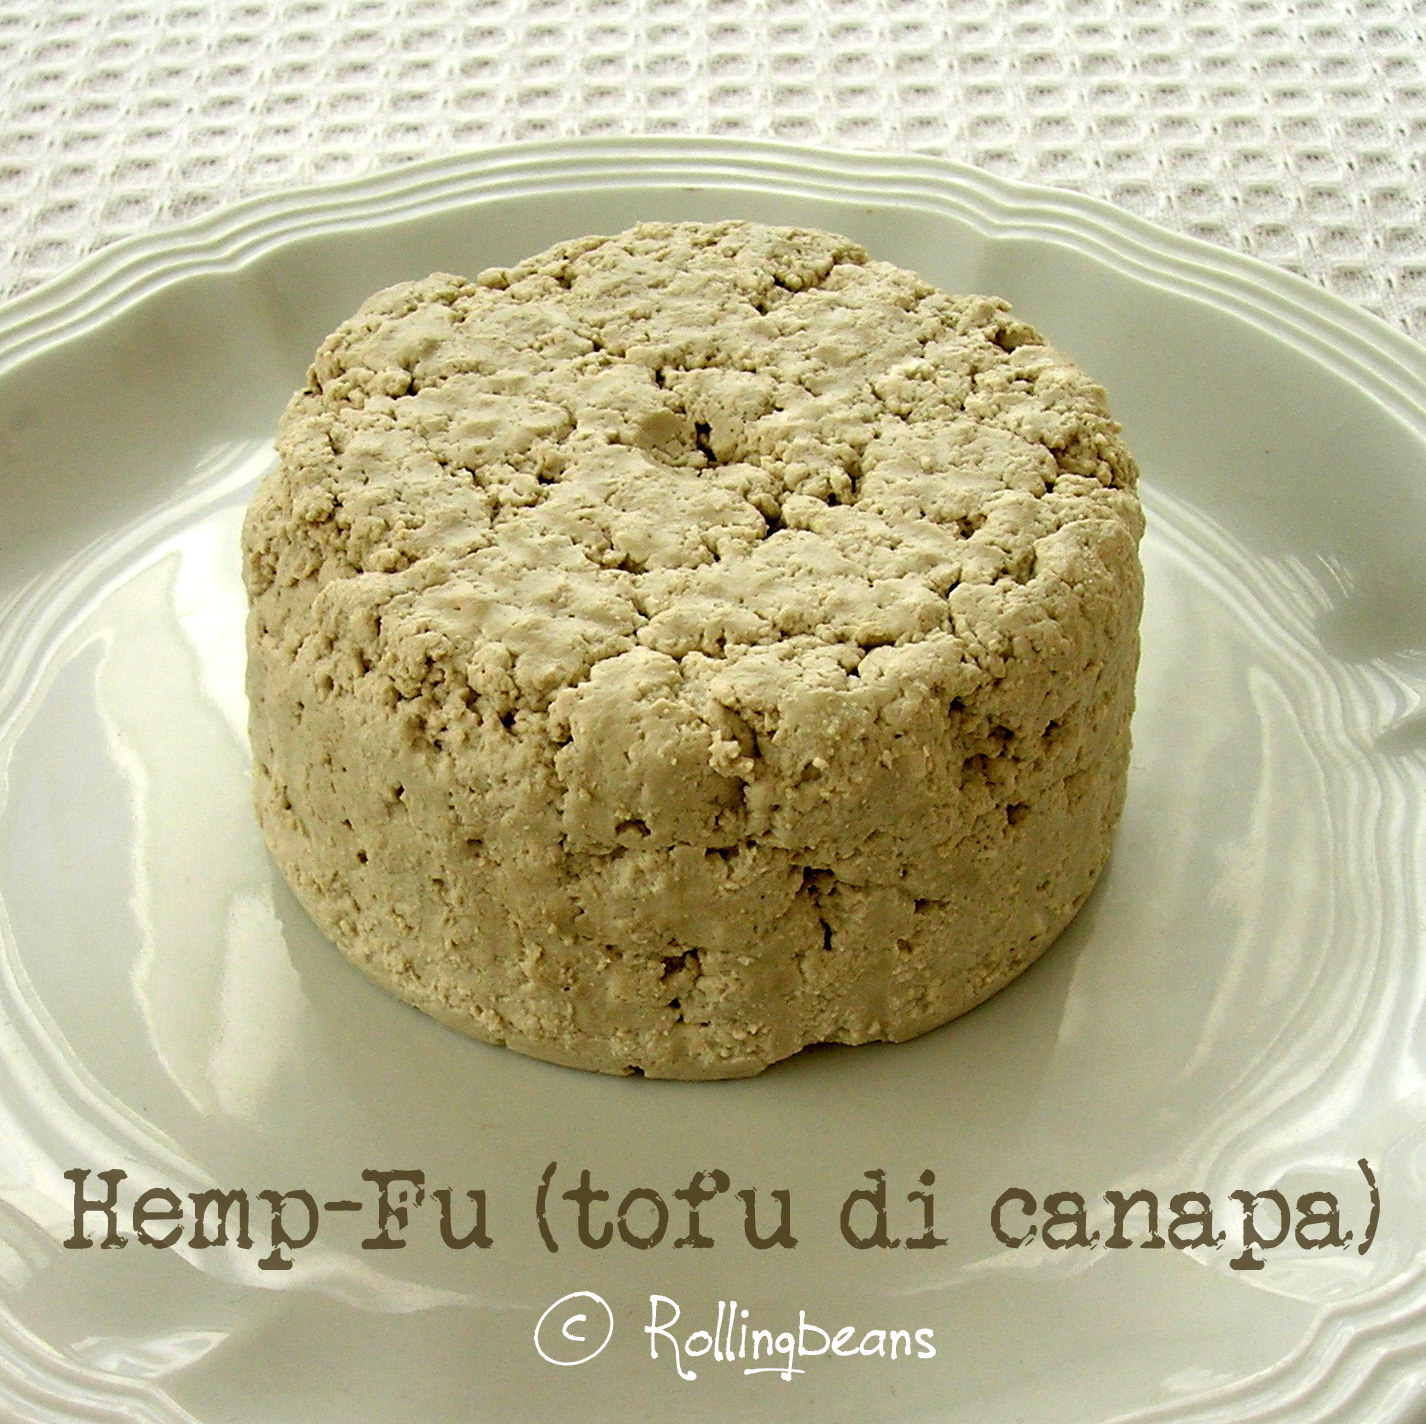 come fare il tofu di canapa (hemp-fu)